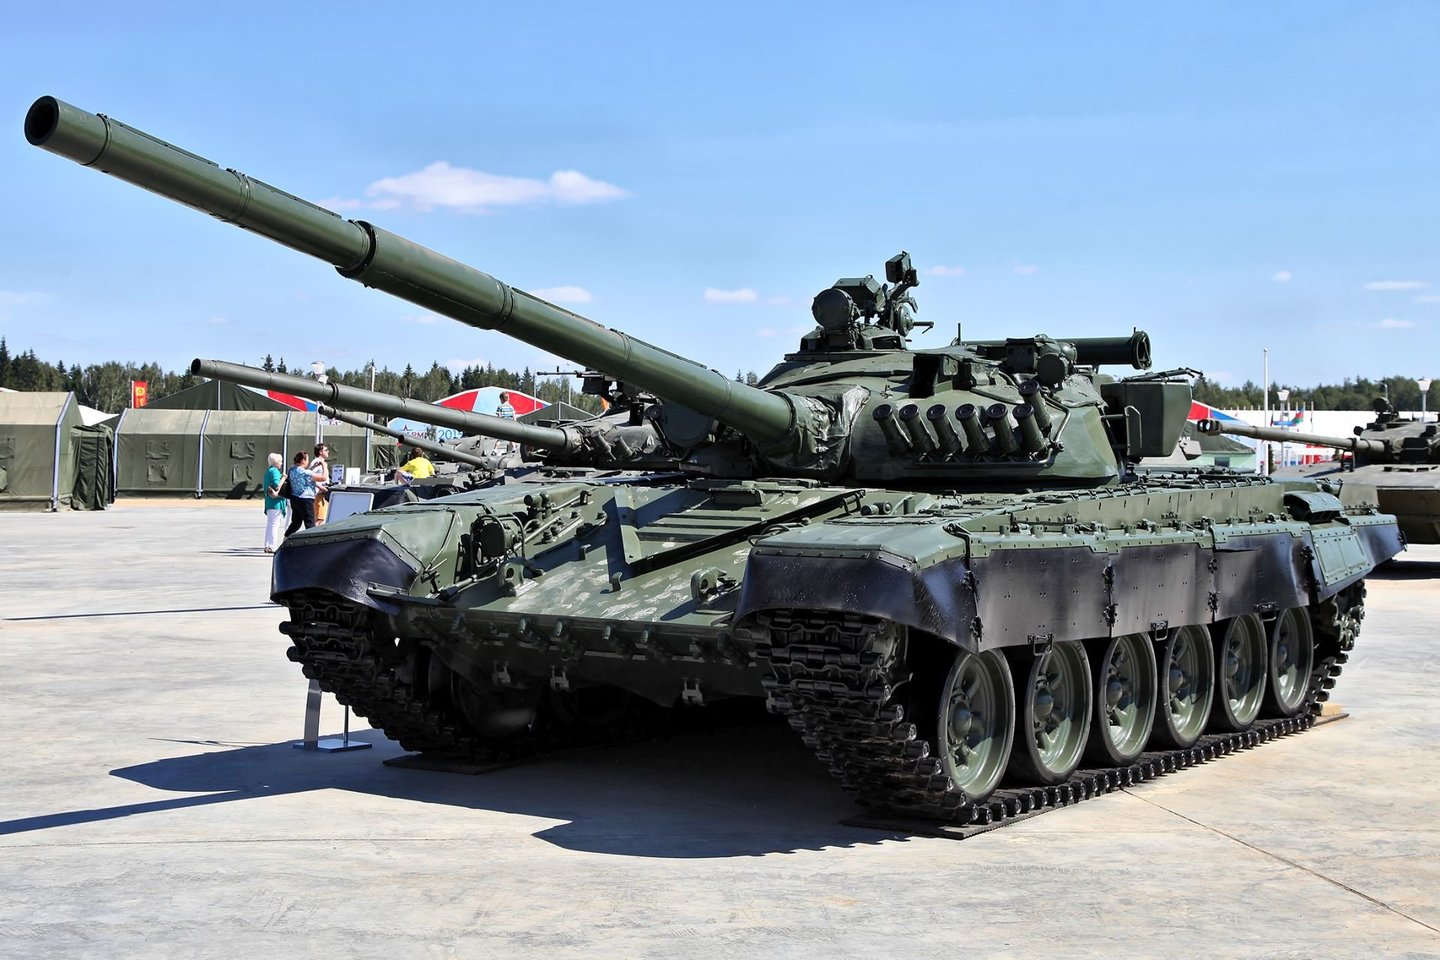  Nors „popieriuje“ T-72 yra galingas tankas, jis turi rimtų problemų. <br> Wikimedia commons